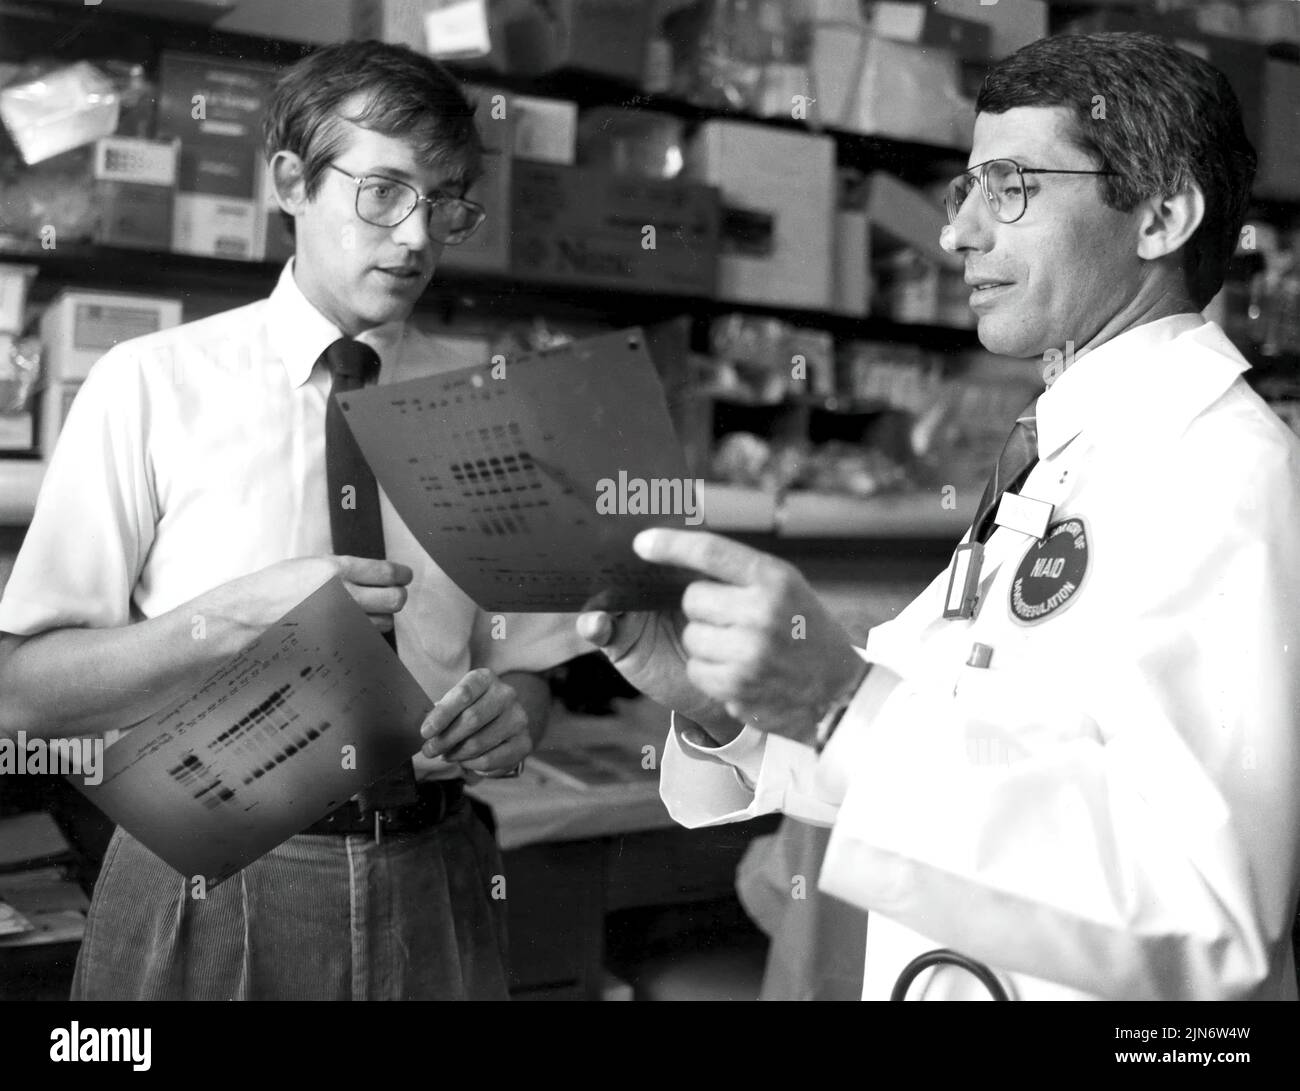 Anthony Fauci y Clifford Lane durante los primeros años de la epidemia de SIDA, los Drs. Anthony Fauci y Clifford Lane analizan datos relacionados con el SIDA en 1987. Crédito: NIAID Foto de stock